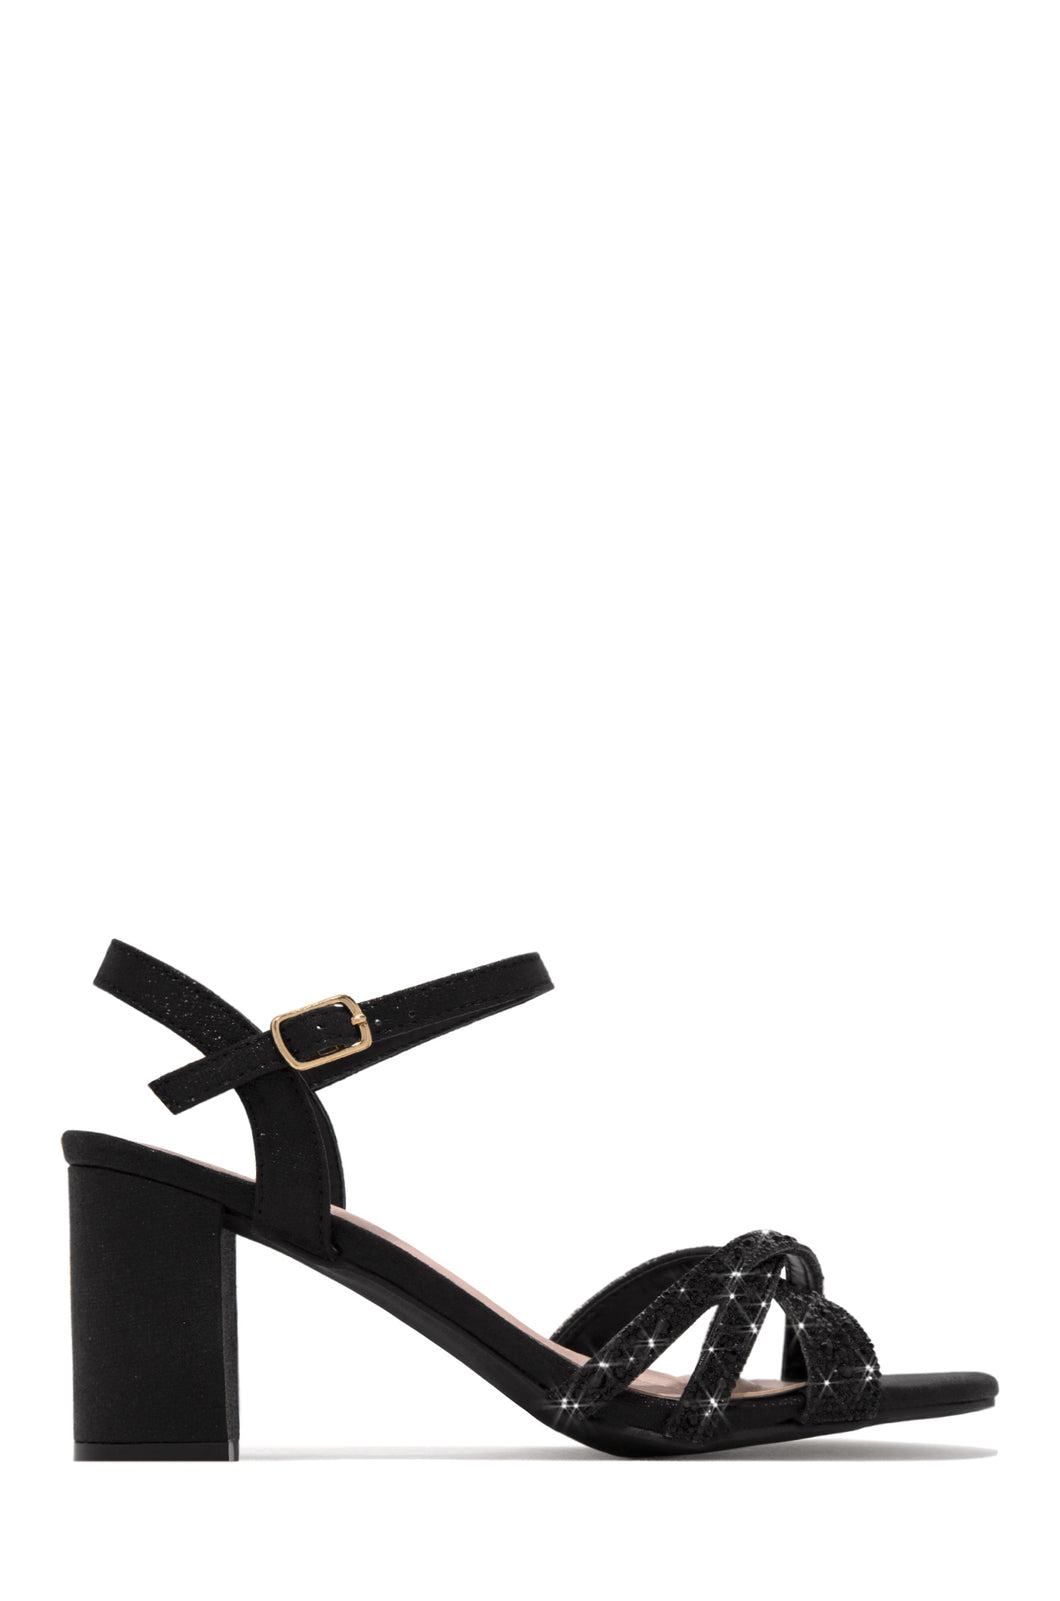 Black Block Heels with Embellished Toe Straps